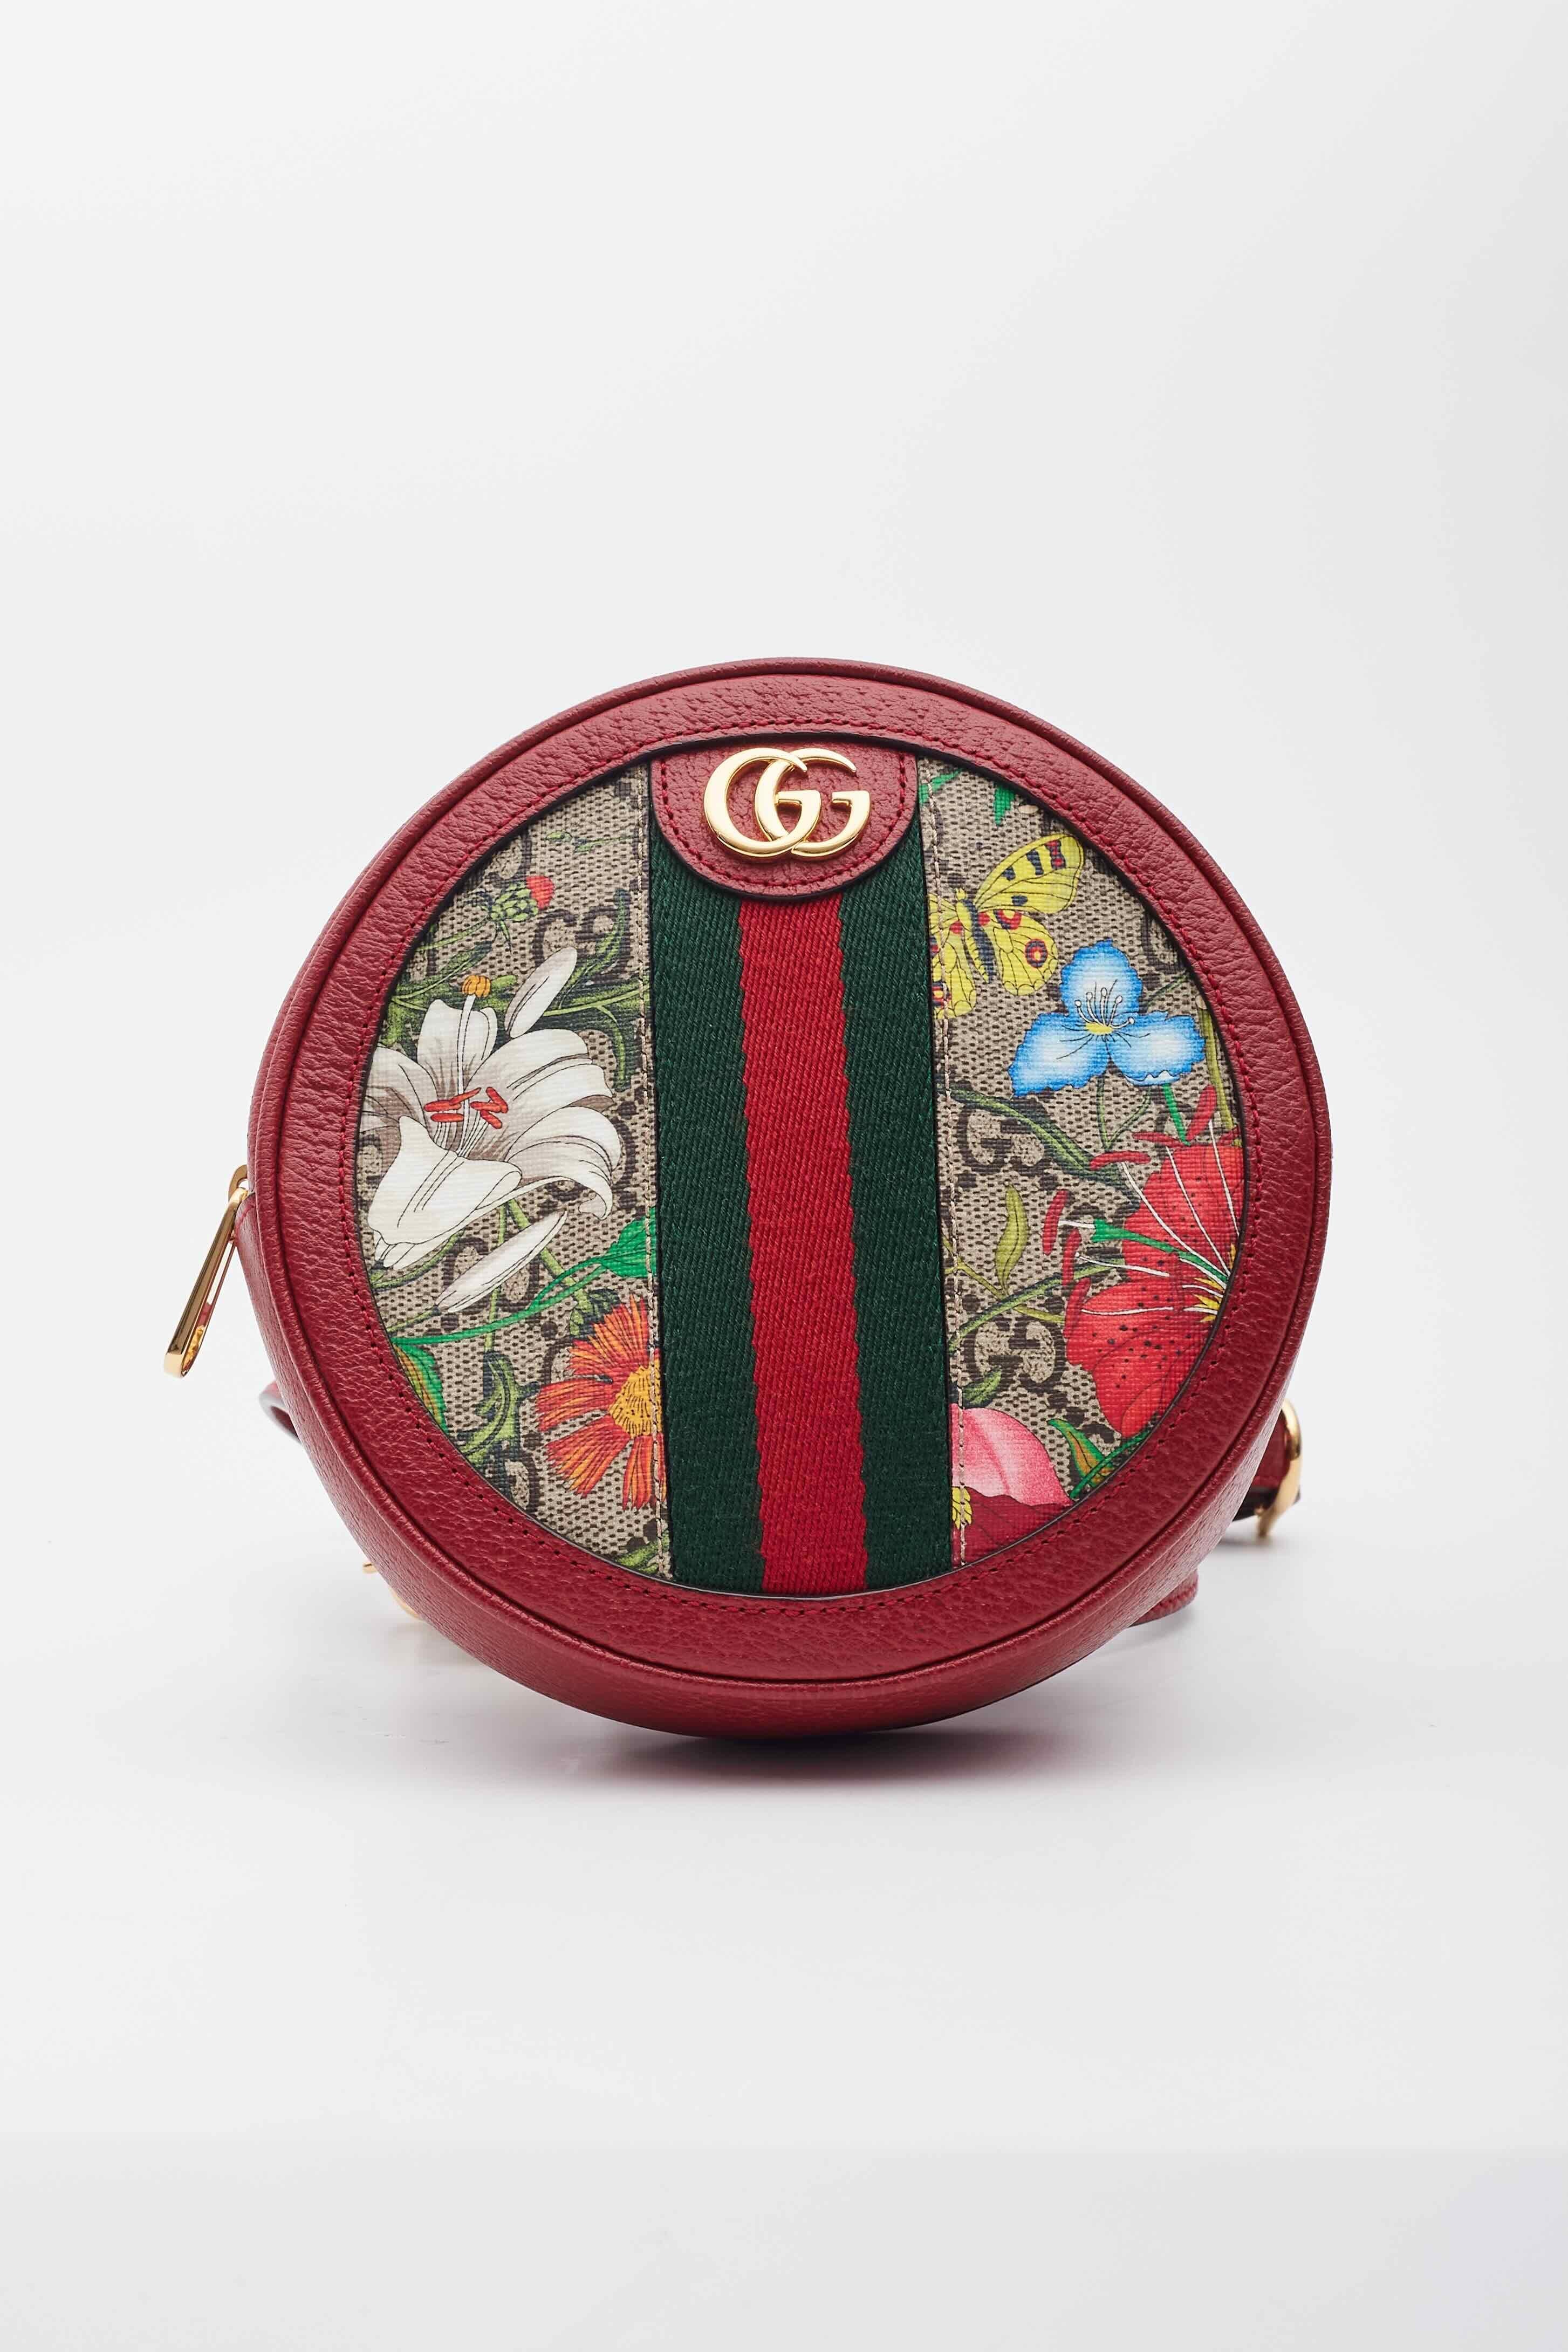 Ce mini sac à dos Gucci présente une toile enduite à monogramme GG, une superposition d'imprimés flore, des ferrures aux tons dorés et une structure ronde. Le sac est doté d'une toile sur le devant et d'une bordure en cuir rouge. La fermeture à